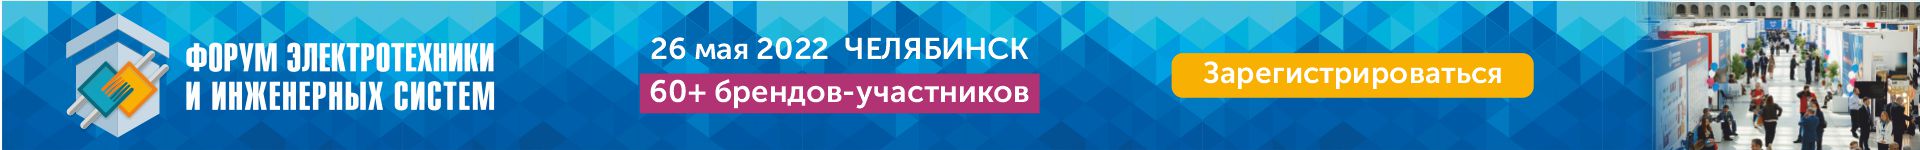 36-й Форум ЭТМ в Челябинске